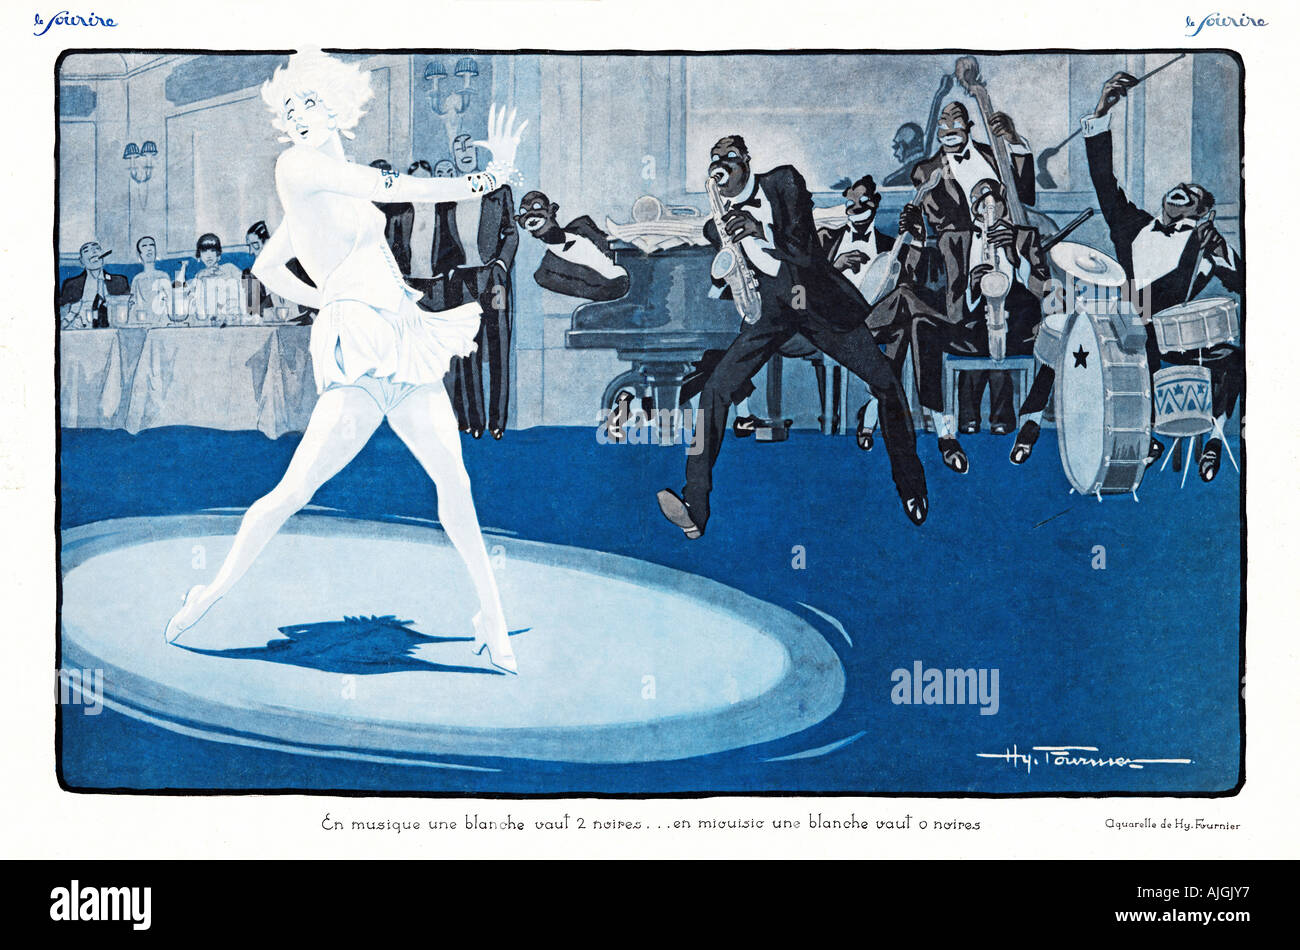 En Musique 1920s French Illustration En musique une blanche vaut 2 noires en miouisic une blanche vaut 0 noires Stock Photo